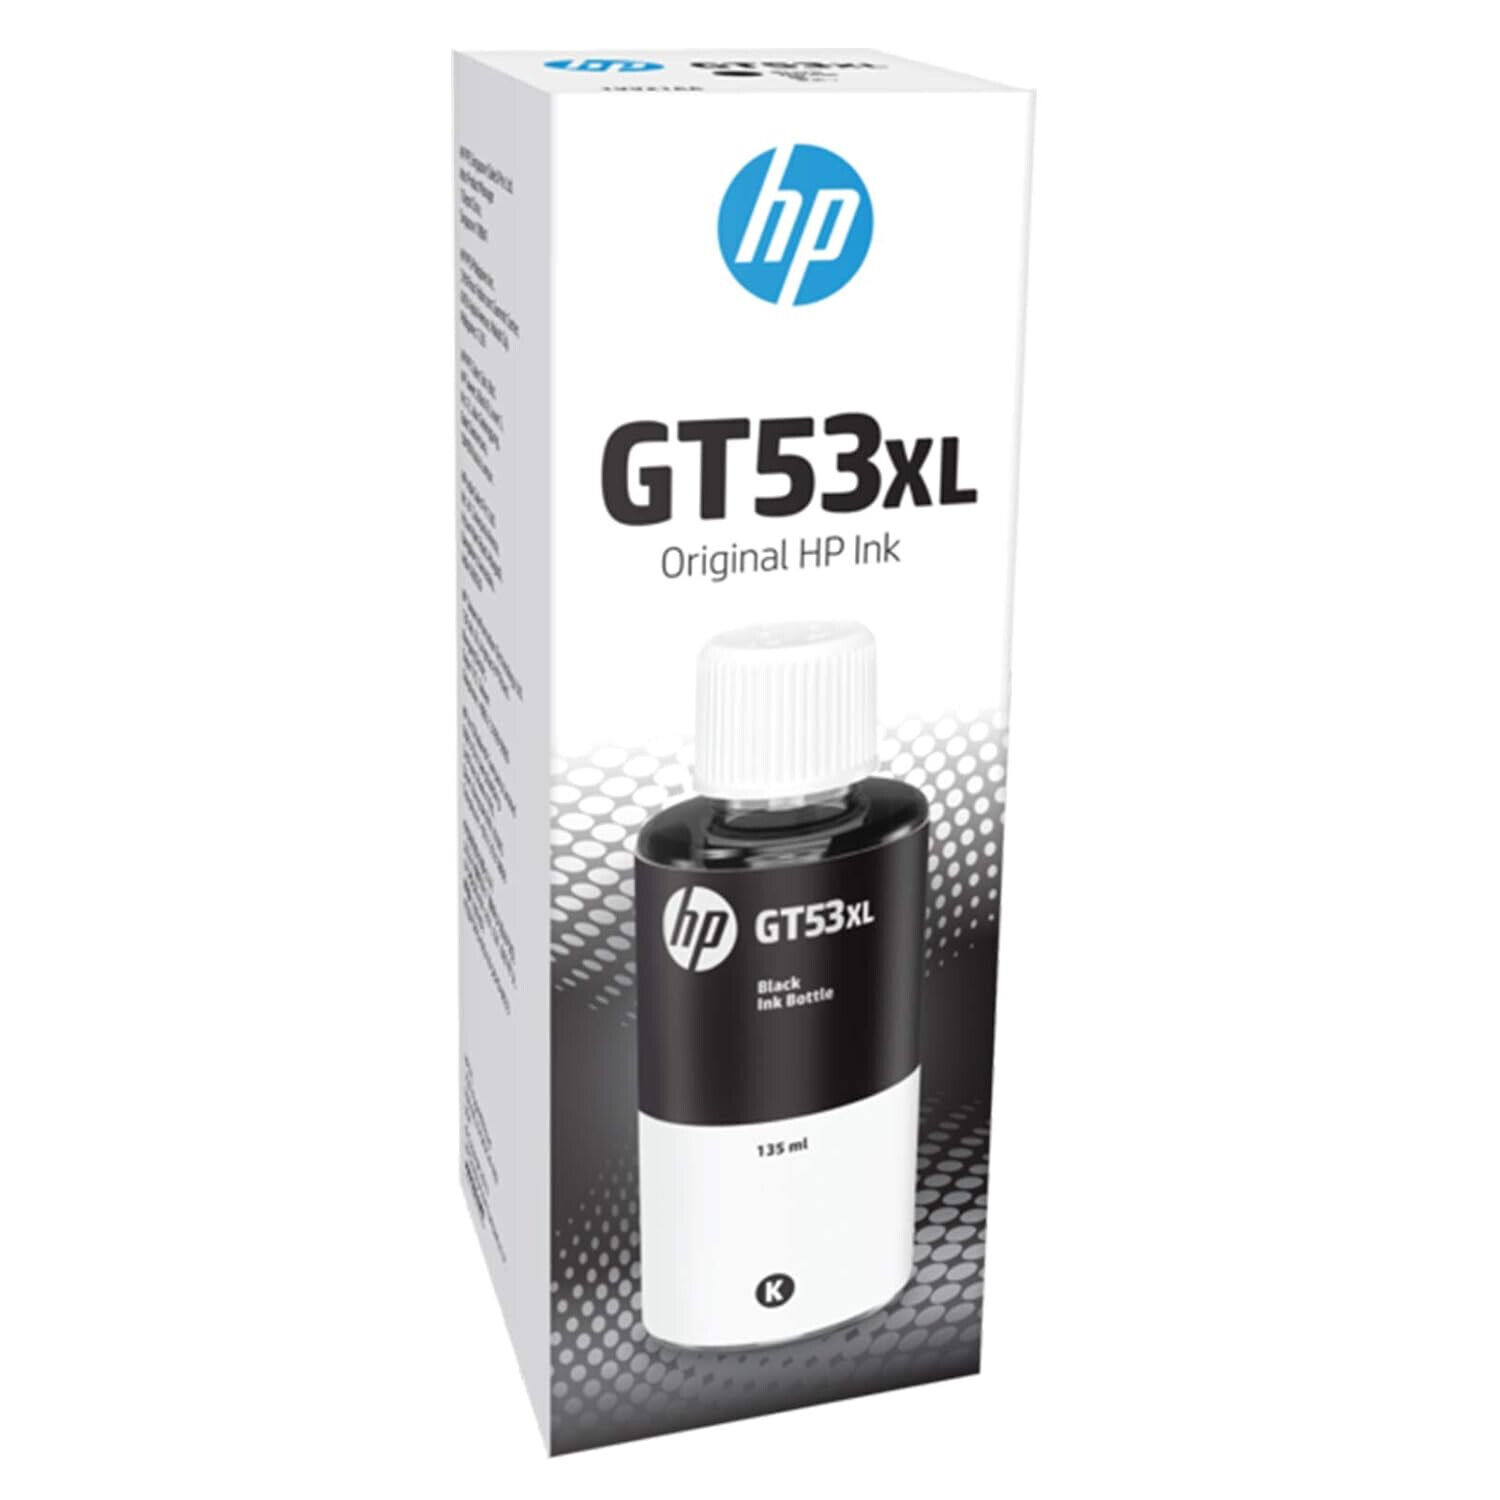 HP GT 53 XL Cartridge Ink (Pack of 1)